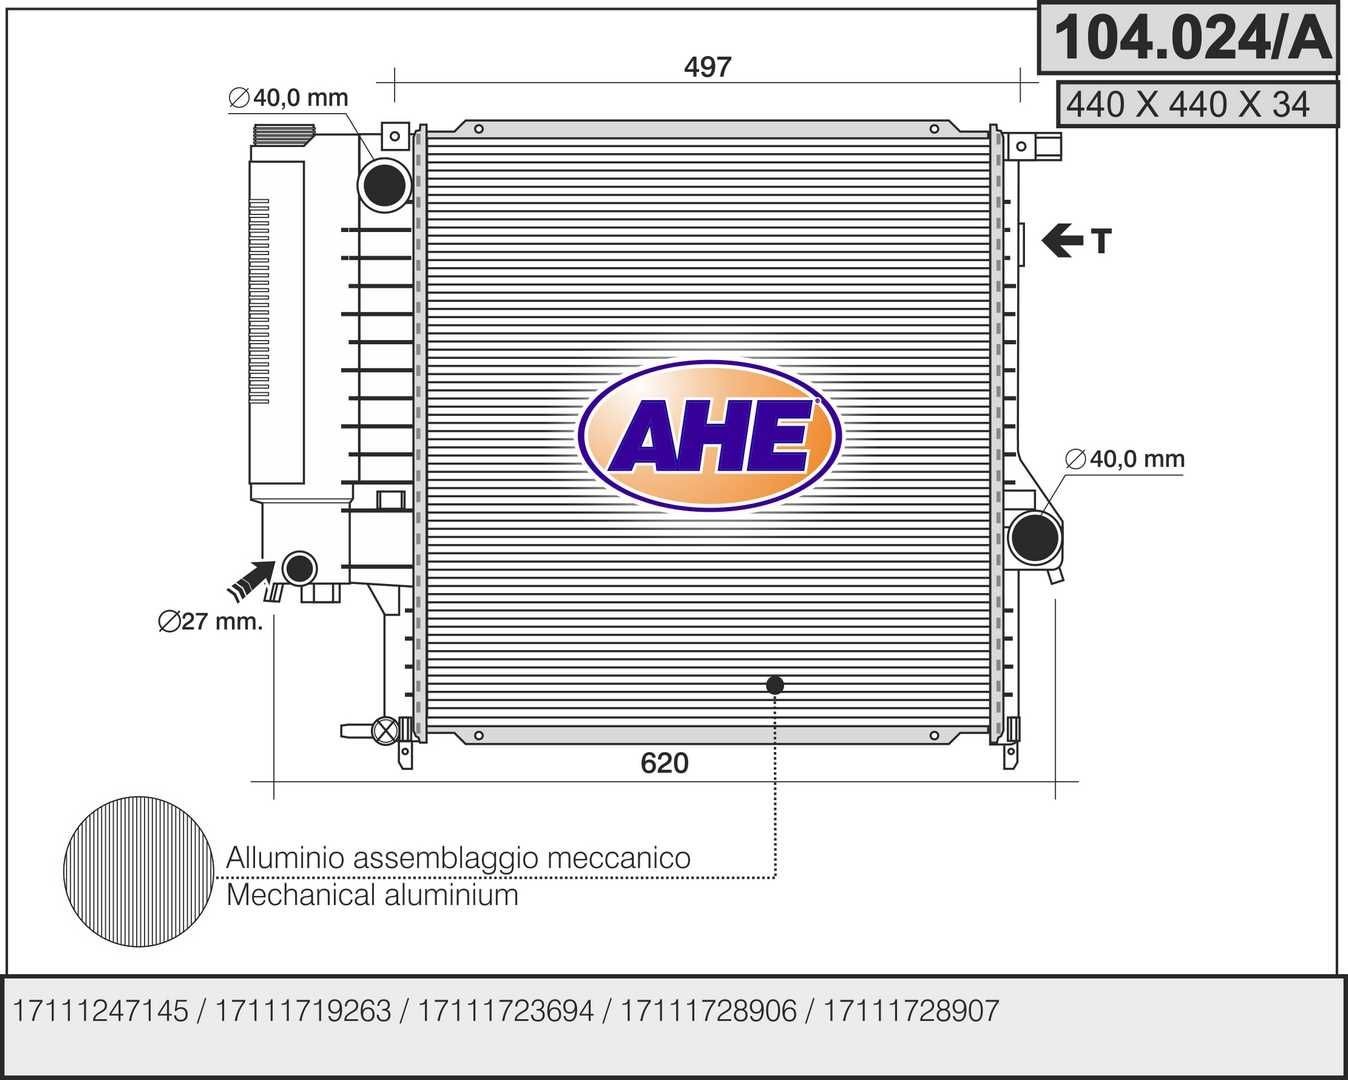 AHE 104.024/A Engine radiator 1.728.905